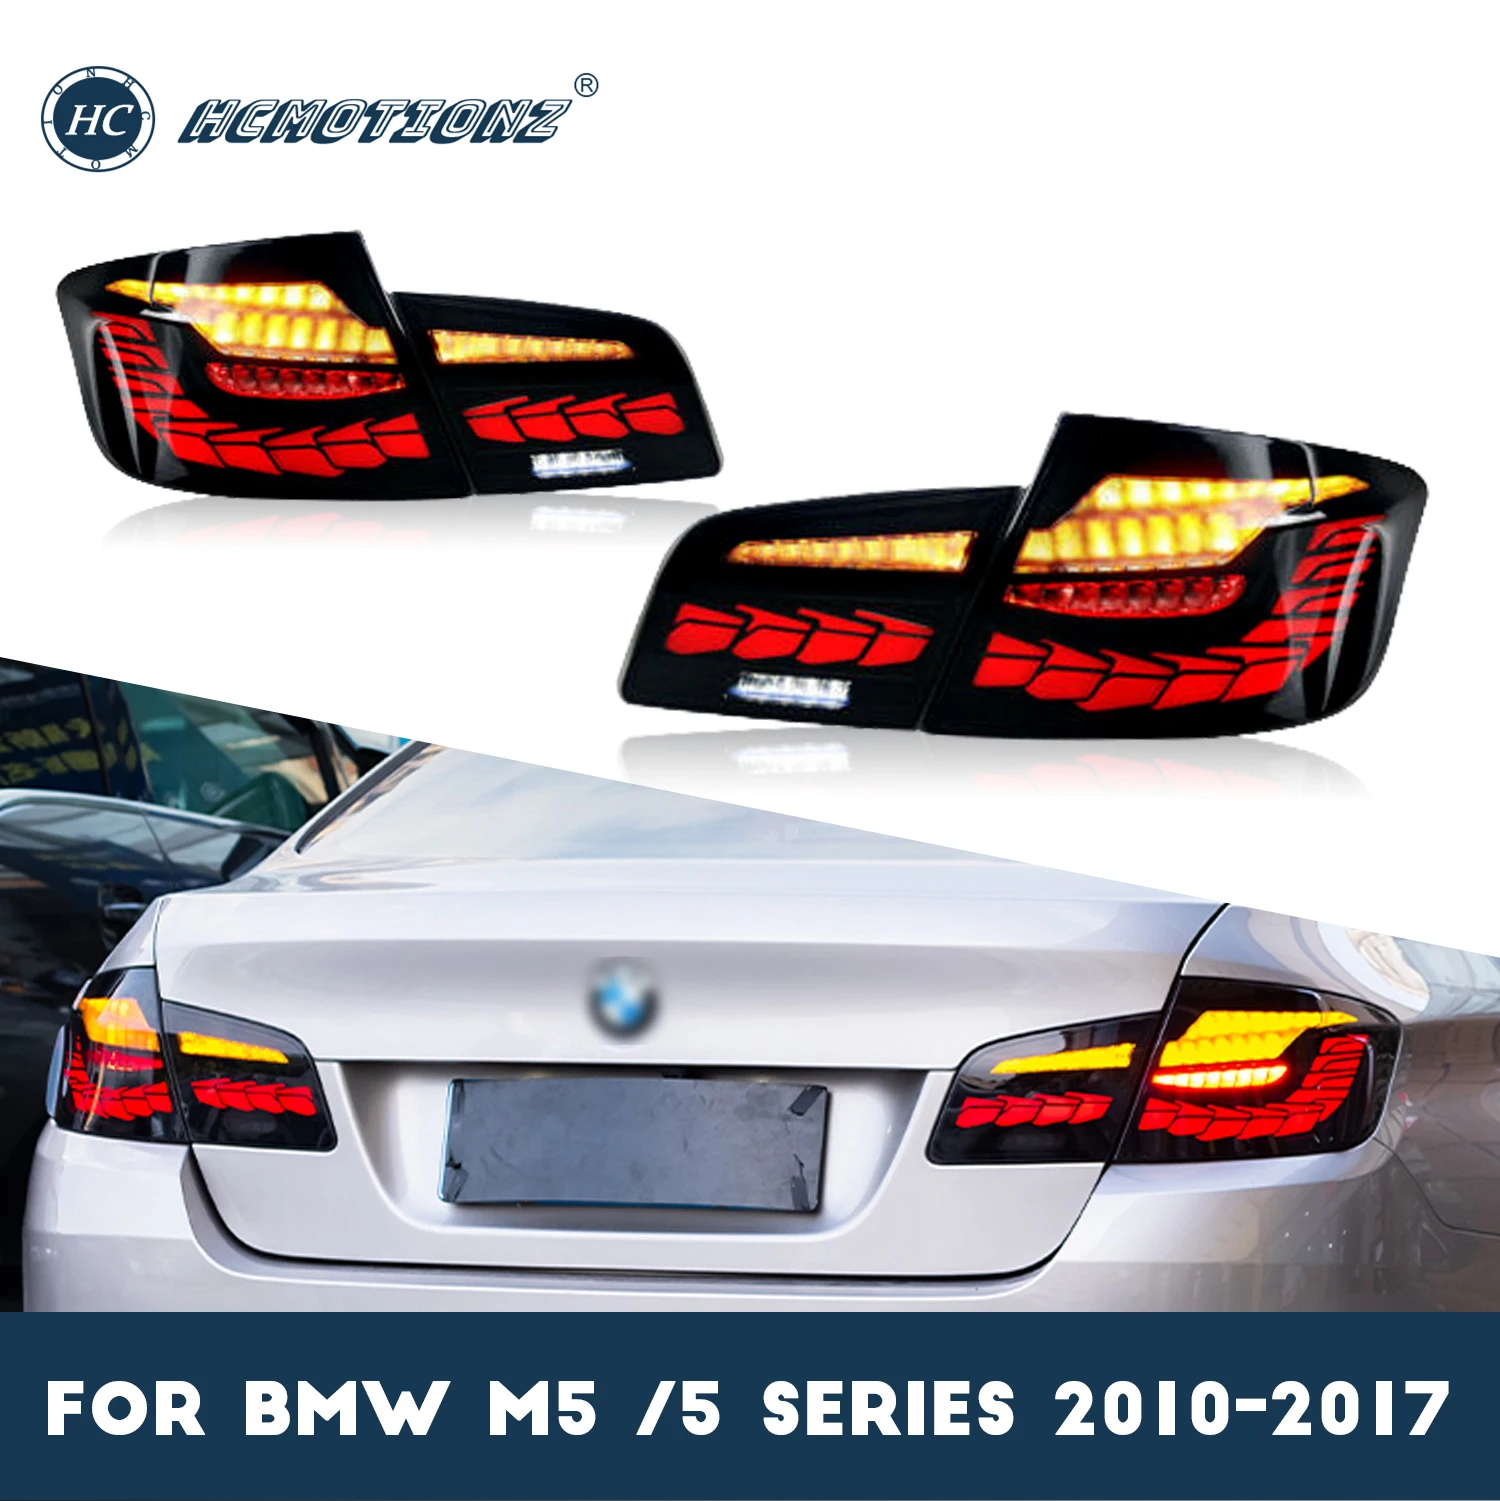 

Задние фонари в сборе для BMW серии 5, F10, M5, 520i, 523i, 528i, 530i, 535i